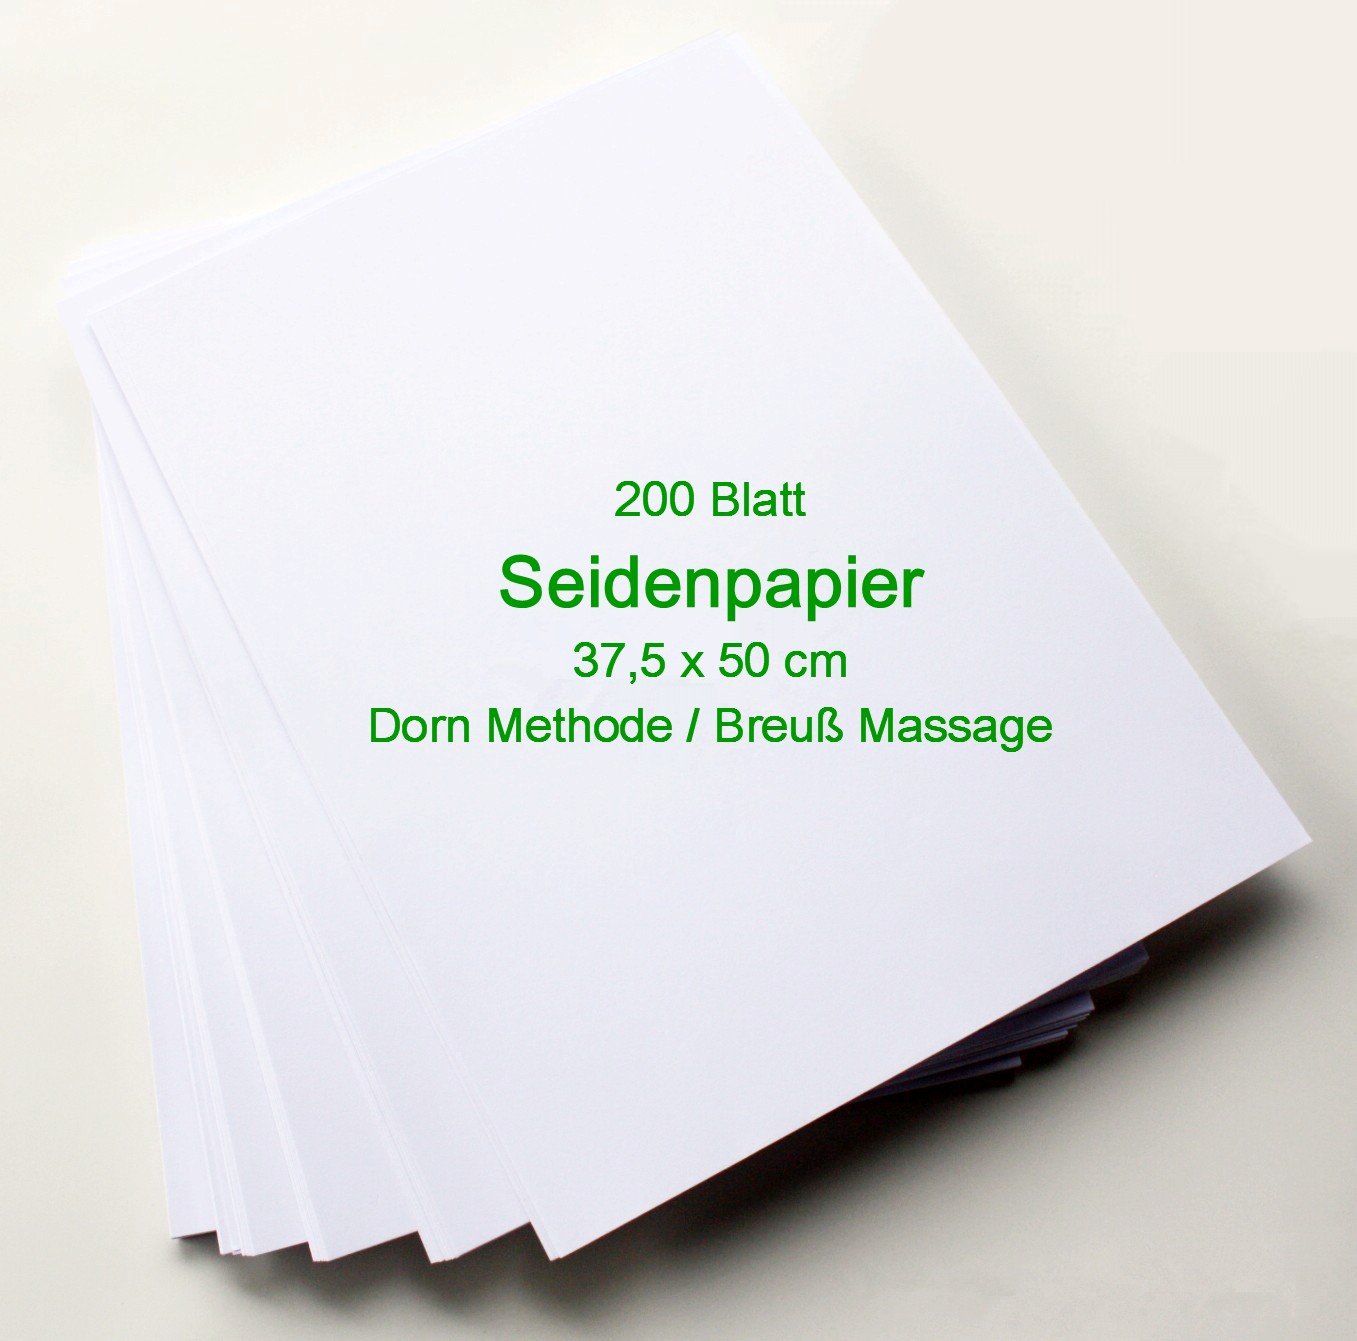 200 Blatt Seidenpapier für Dorn Methode/Breuß Massage - 37,5cm x 50,0 cm